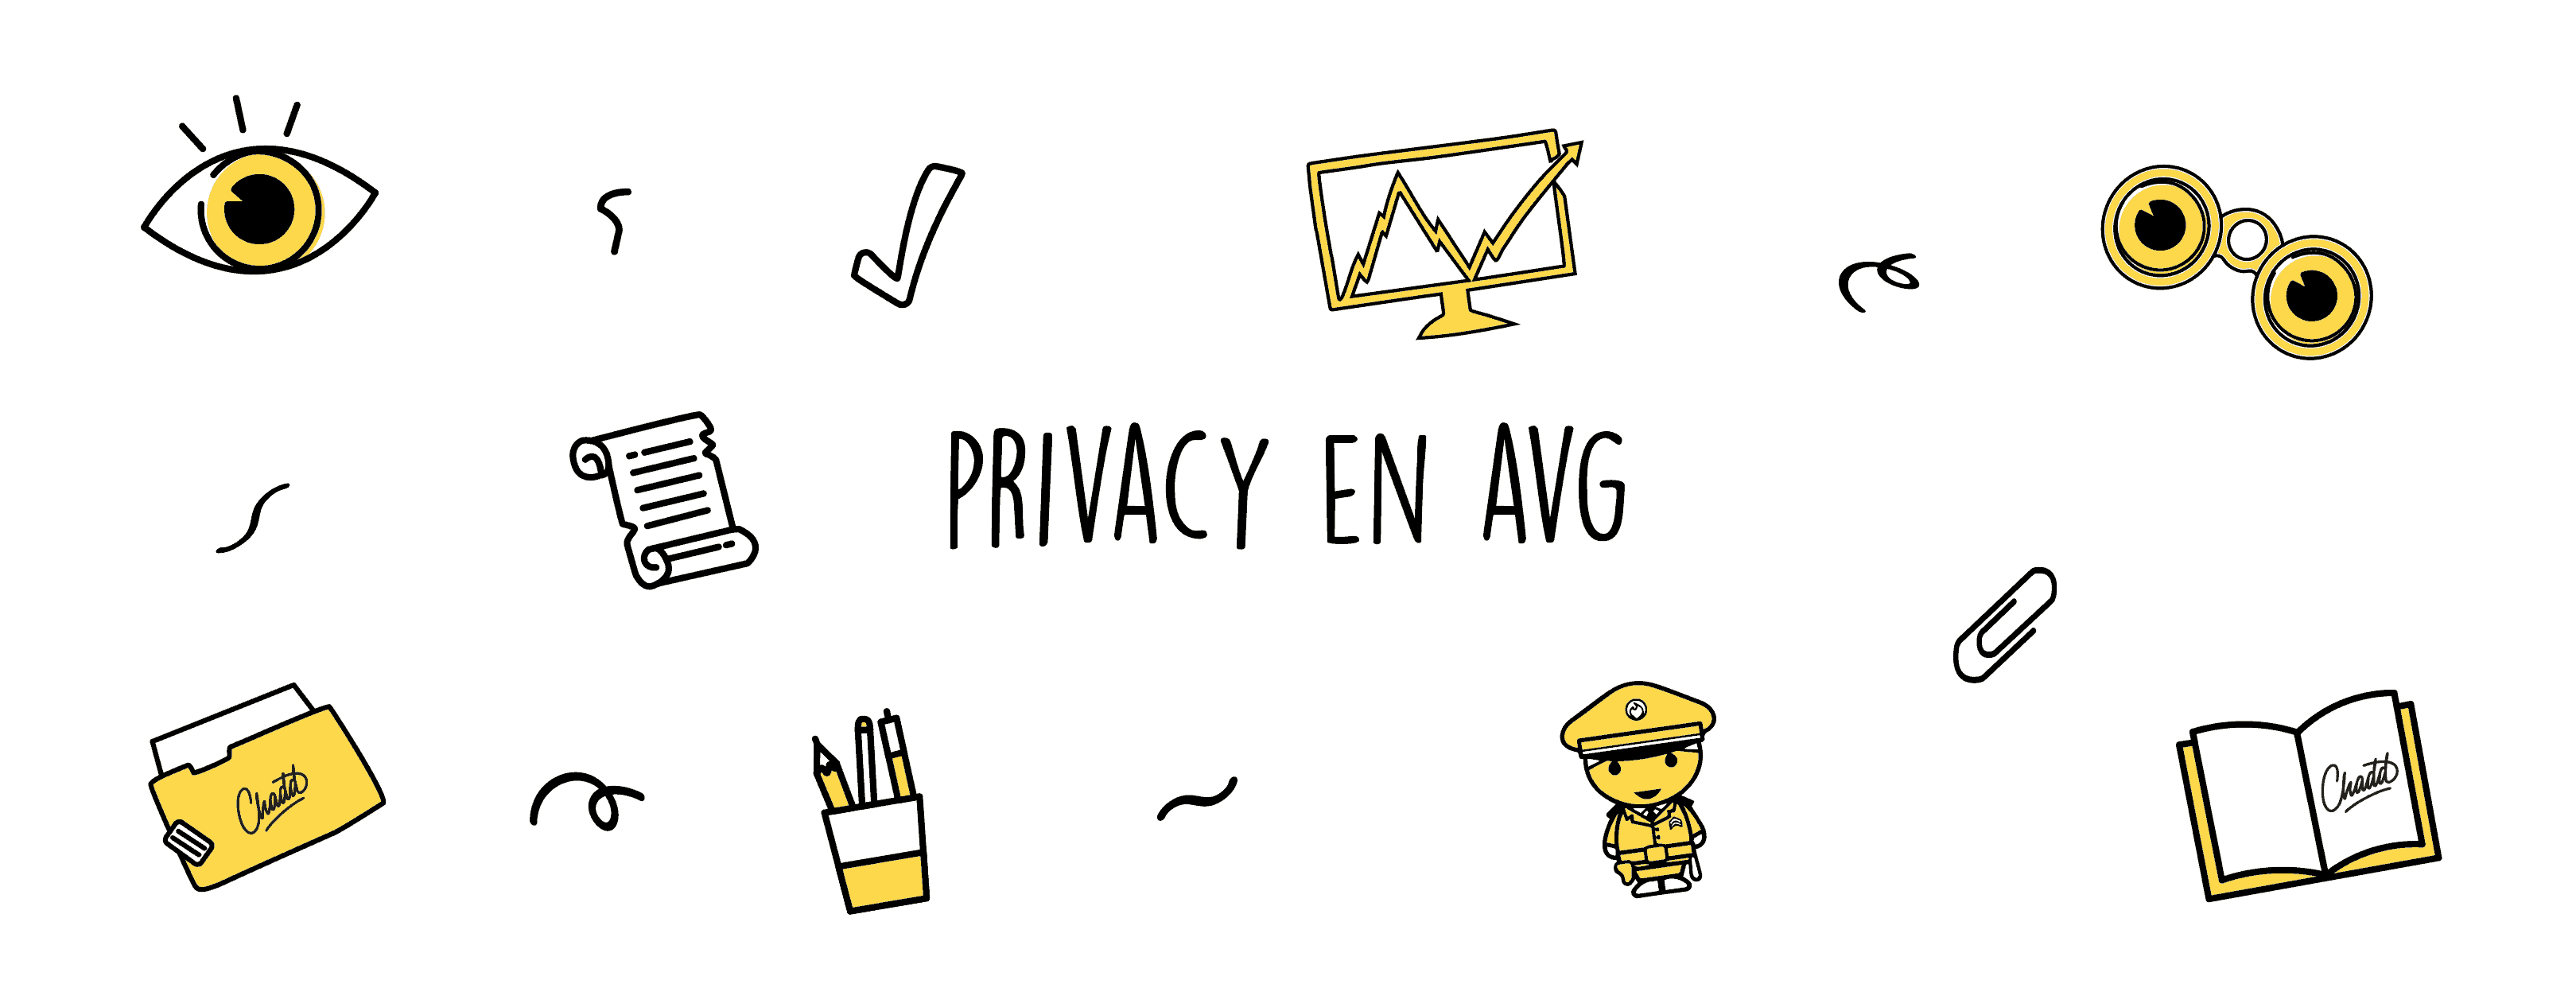 privacy en avg